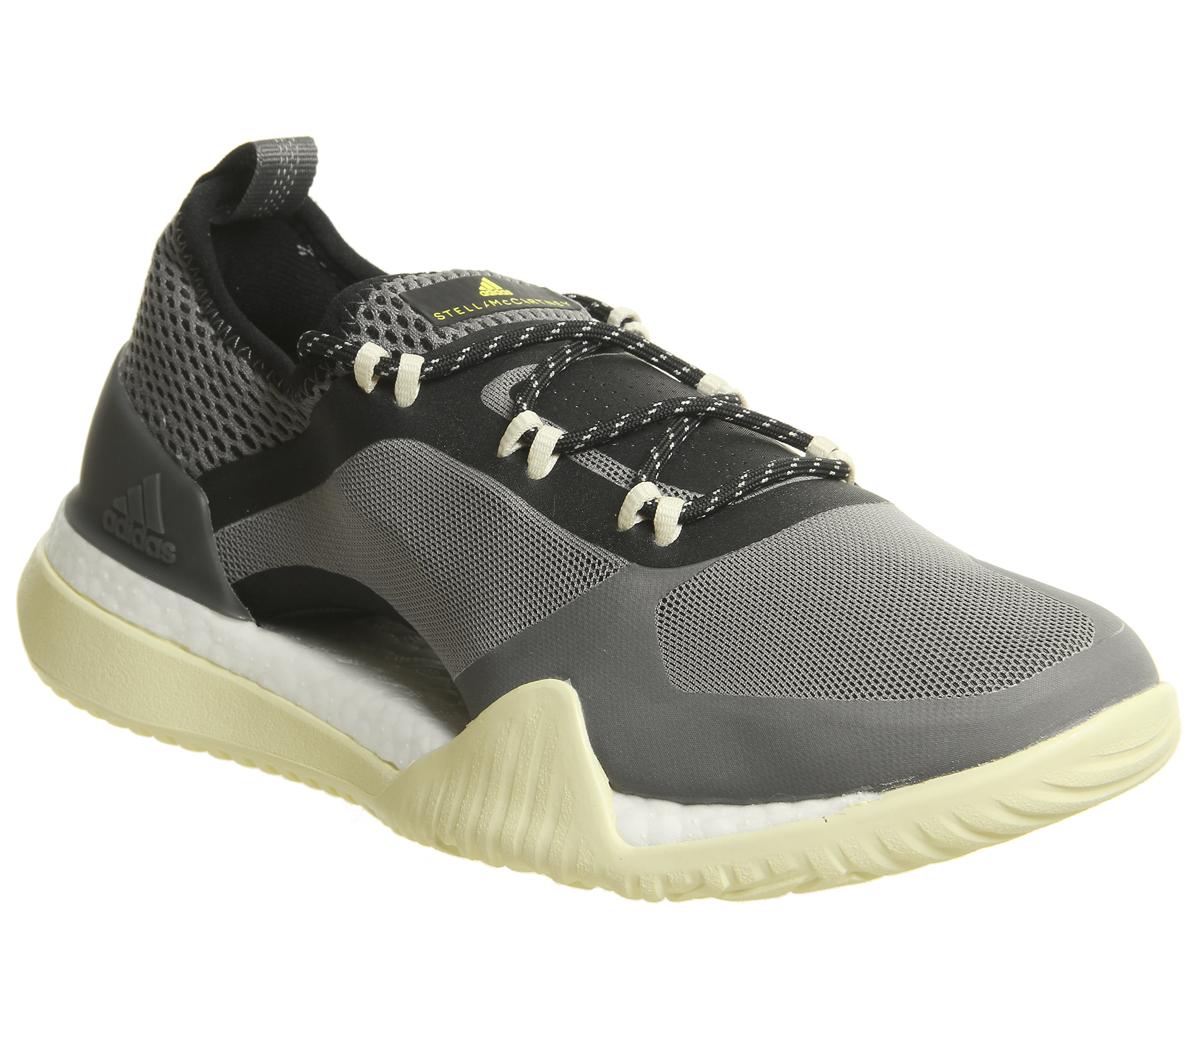 adidas by stella mccartney pureboost x tr 3.0 shoes